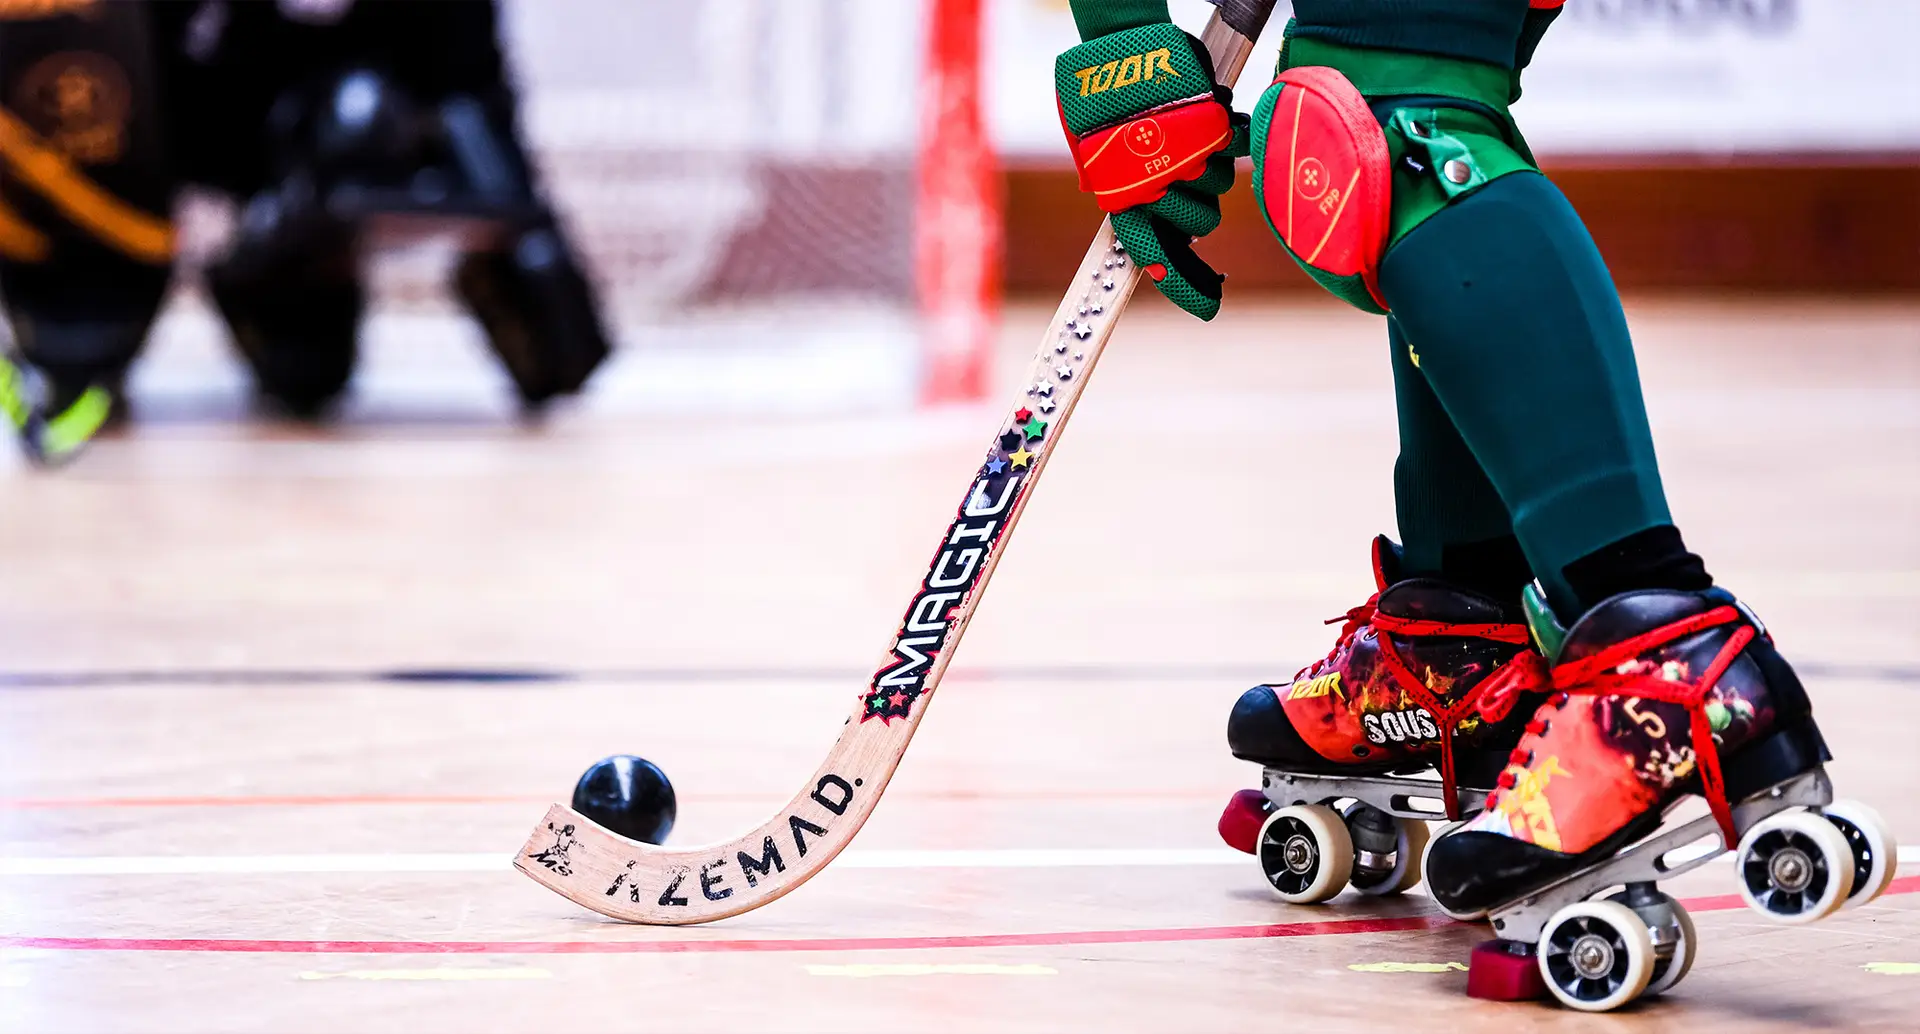 Portugal defronta Inglaterra nos 'quartos' do Europeu de hóquei em patins